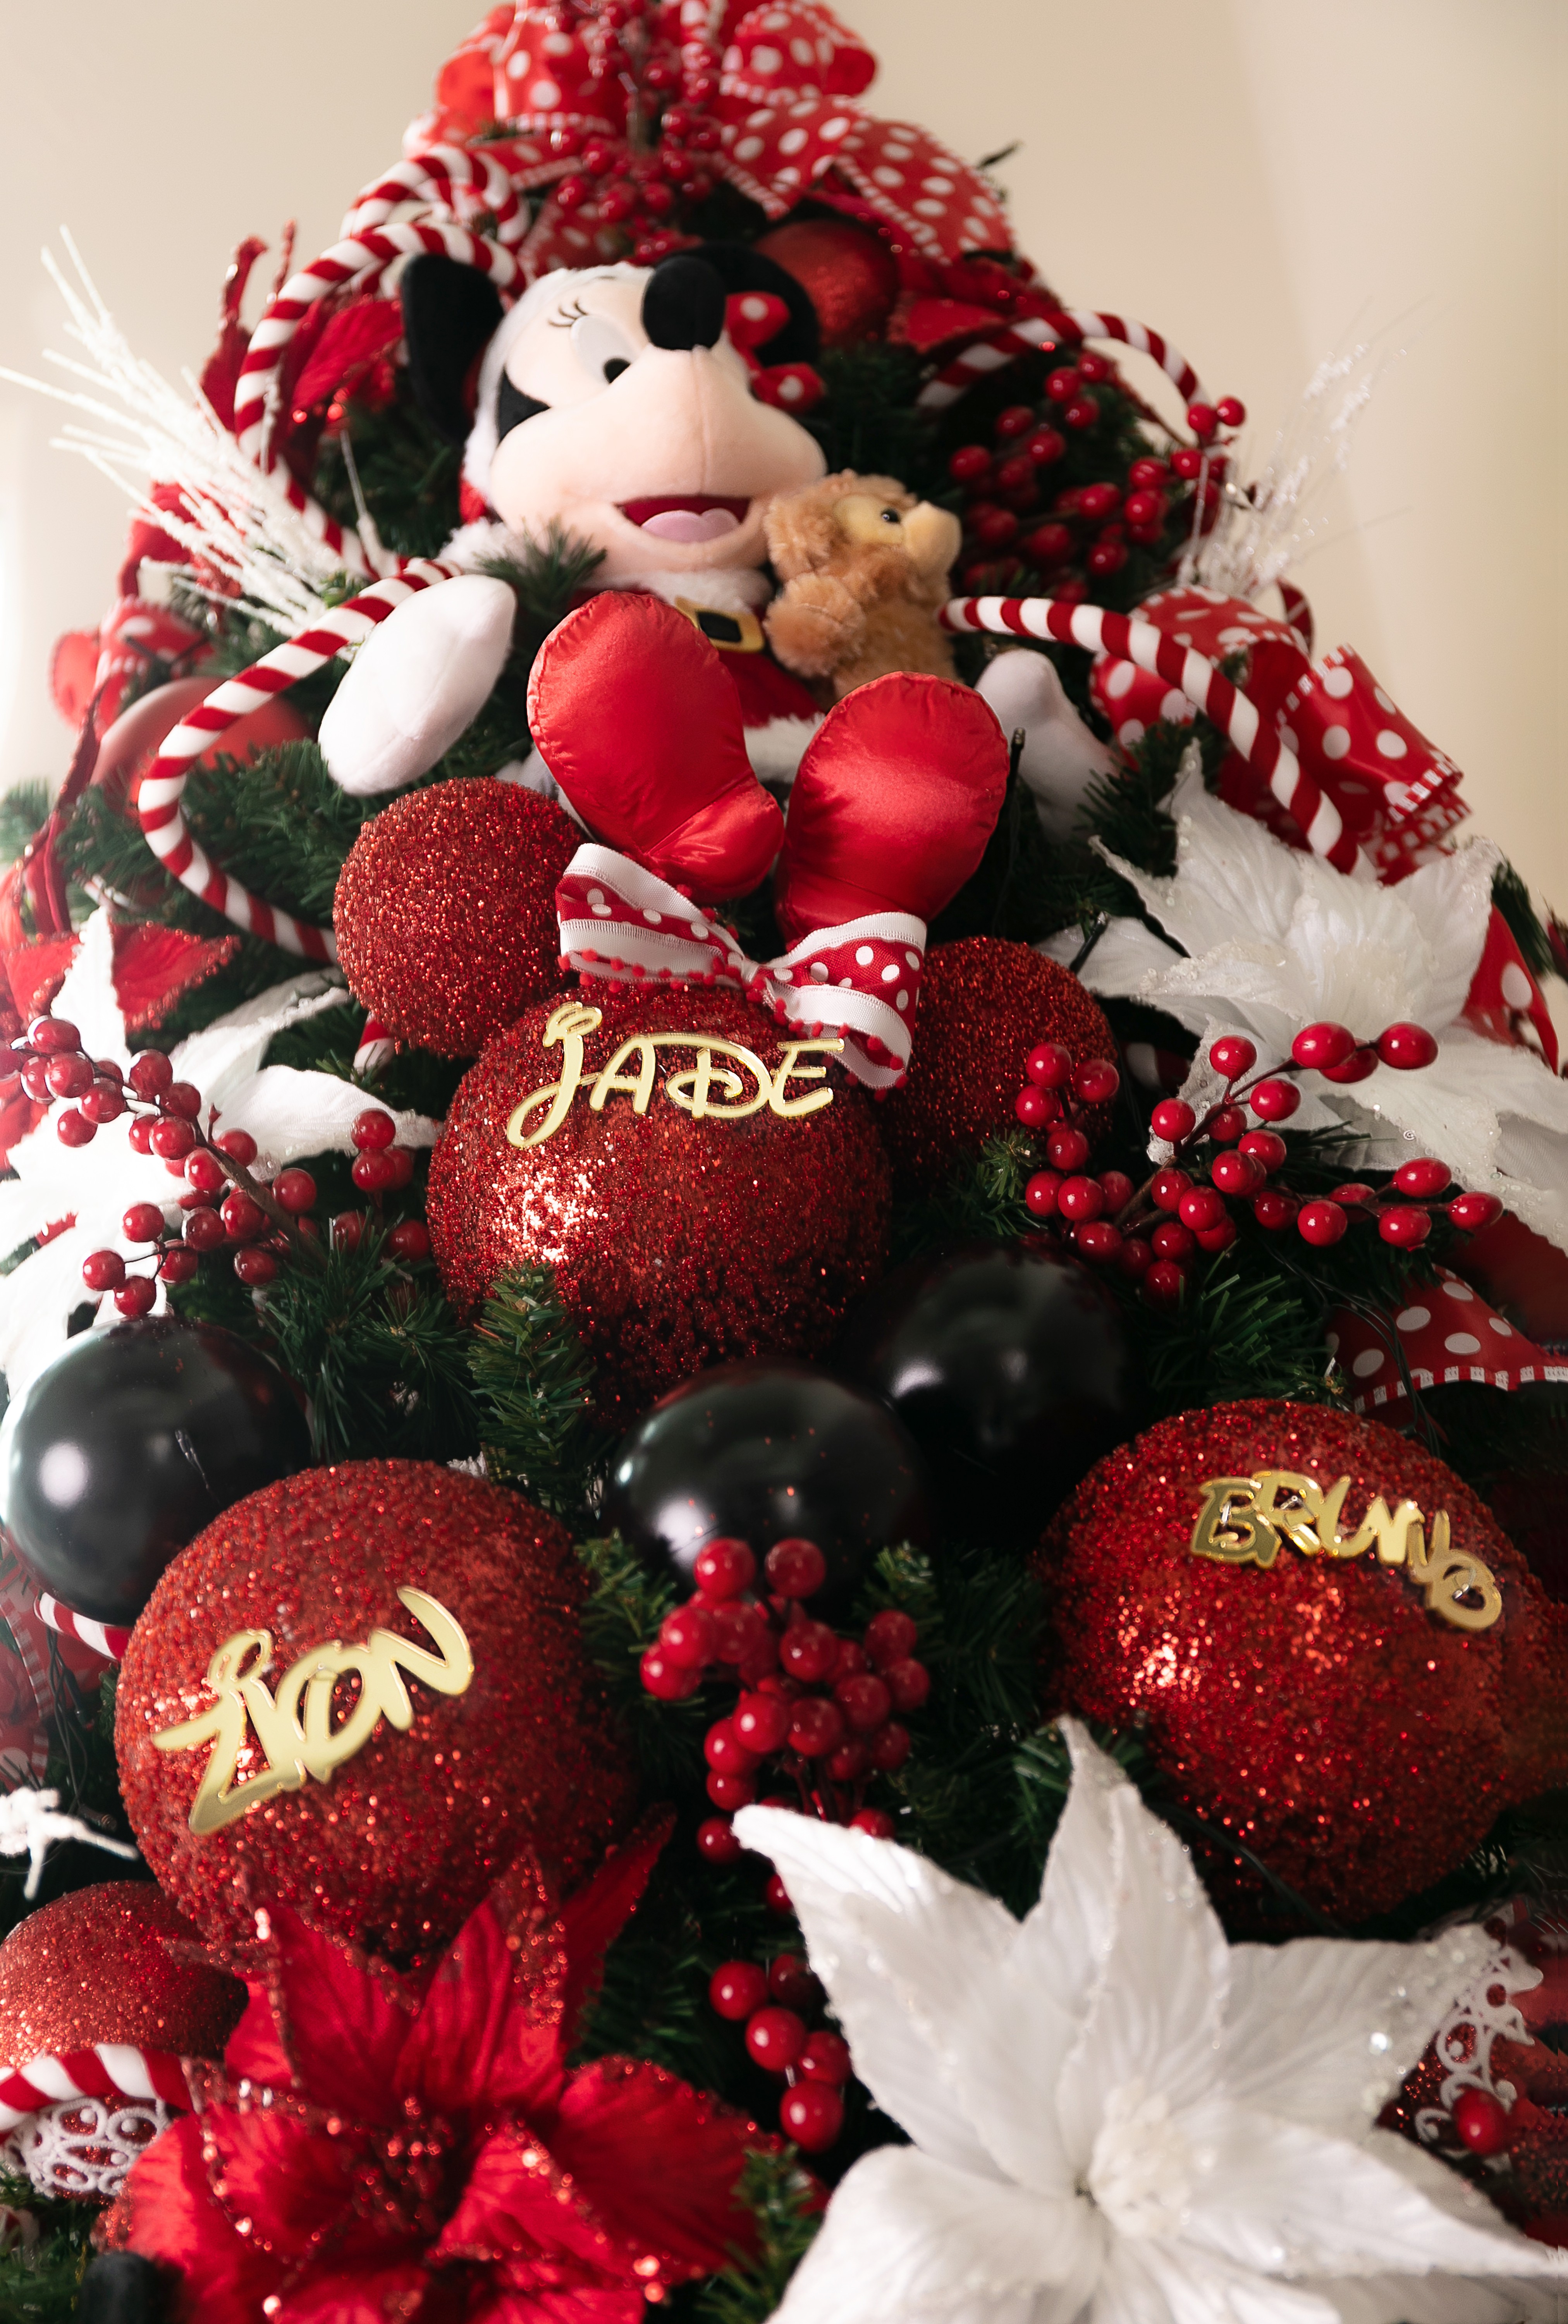 Jade Seba mostra decoração de Natal com árvore de três metros (Foto: STUDIO DI FIORI)